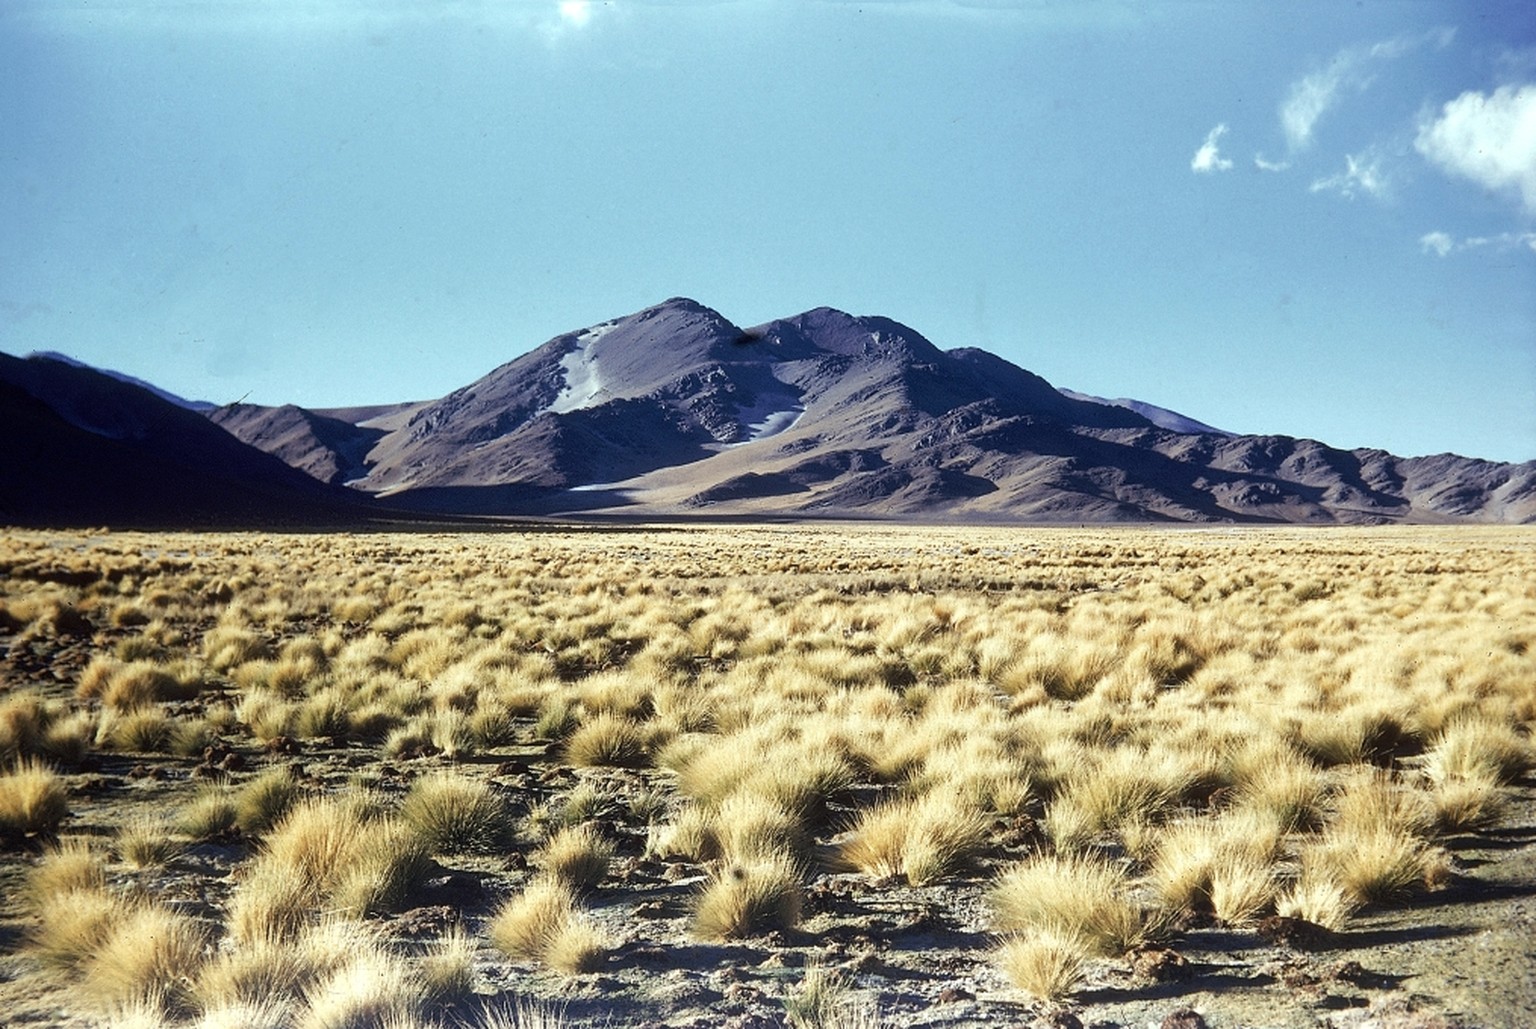 Buschige Gewächse in einer Ebene, Hintergrund Berge
Heim, Arnold 
Titel:
Puna de Atacama, Nord Paso S. Francisco bei Las Grutas 3900 m 
Beschreibung:
Buschige Gewächse in einer Ebene, Hintergrund Berg ...